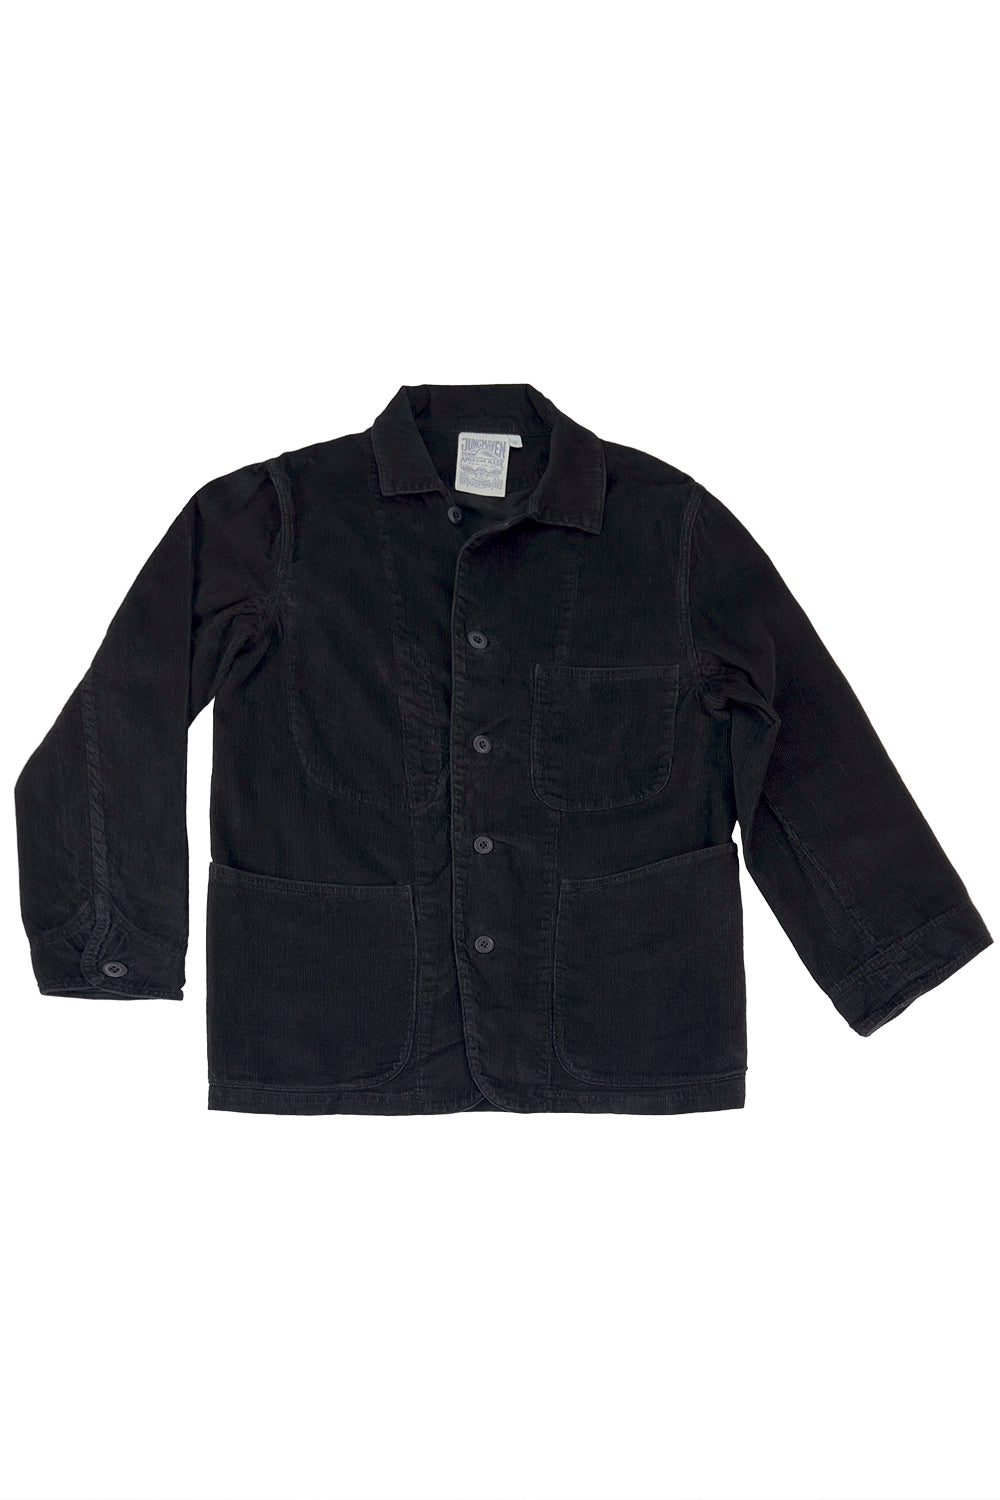 Tour Jacket | Jungmaven Hemp Clothing & Accessories Color: Black